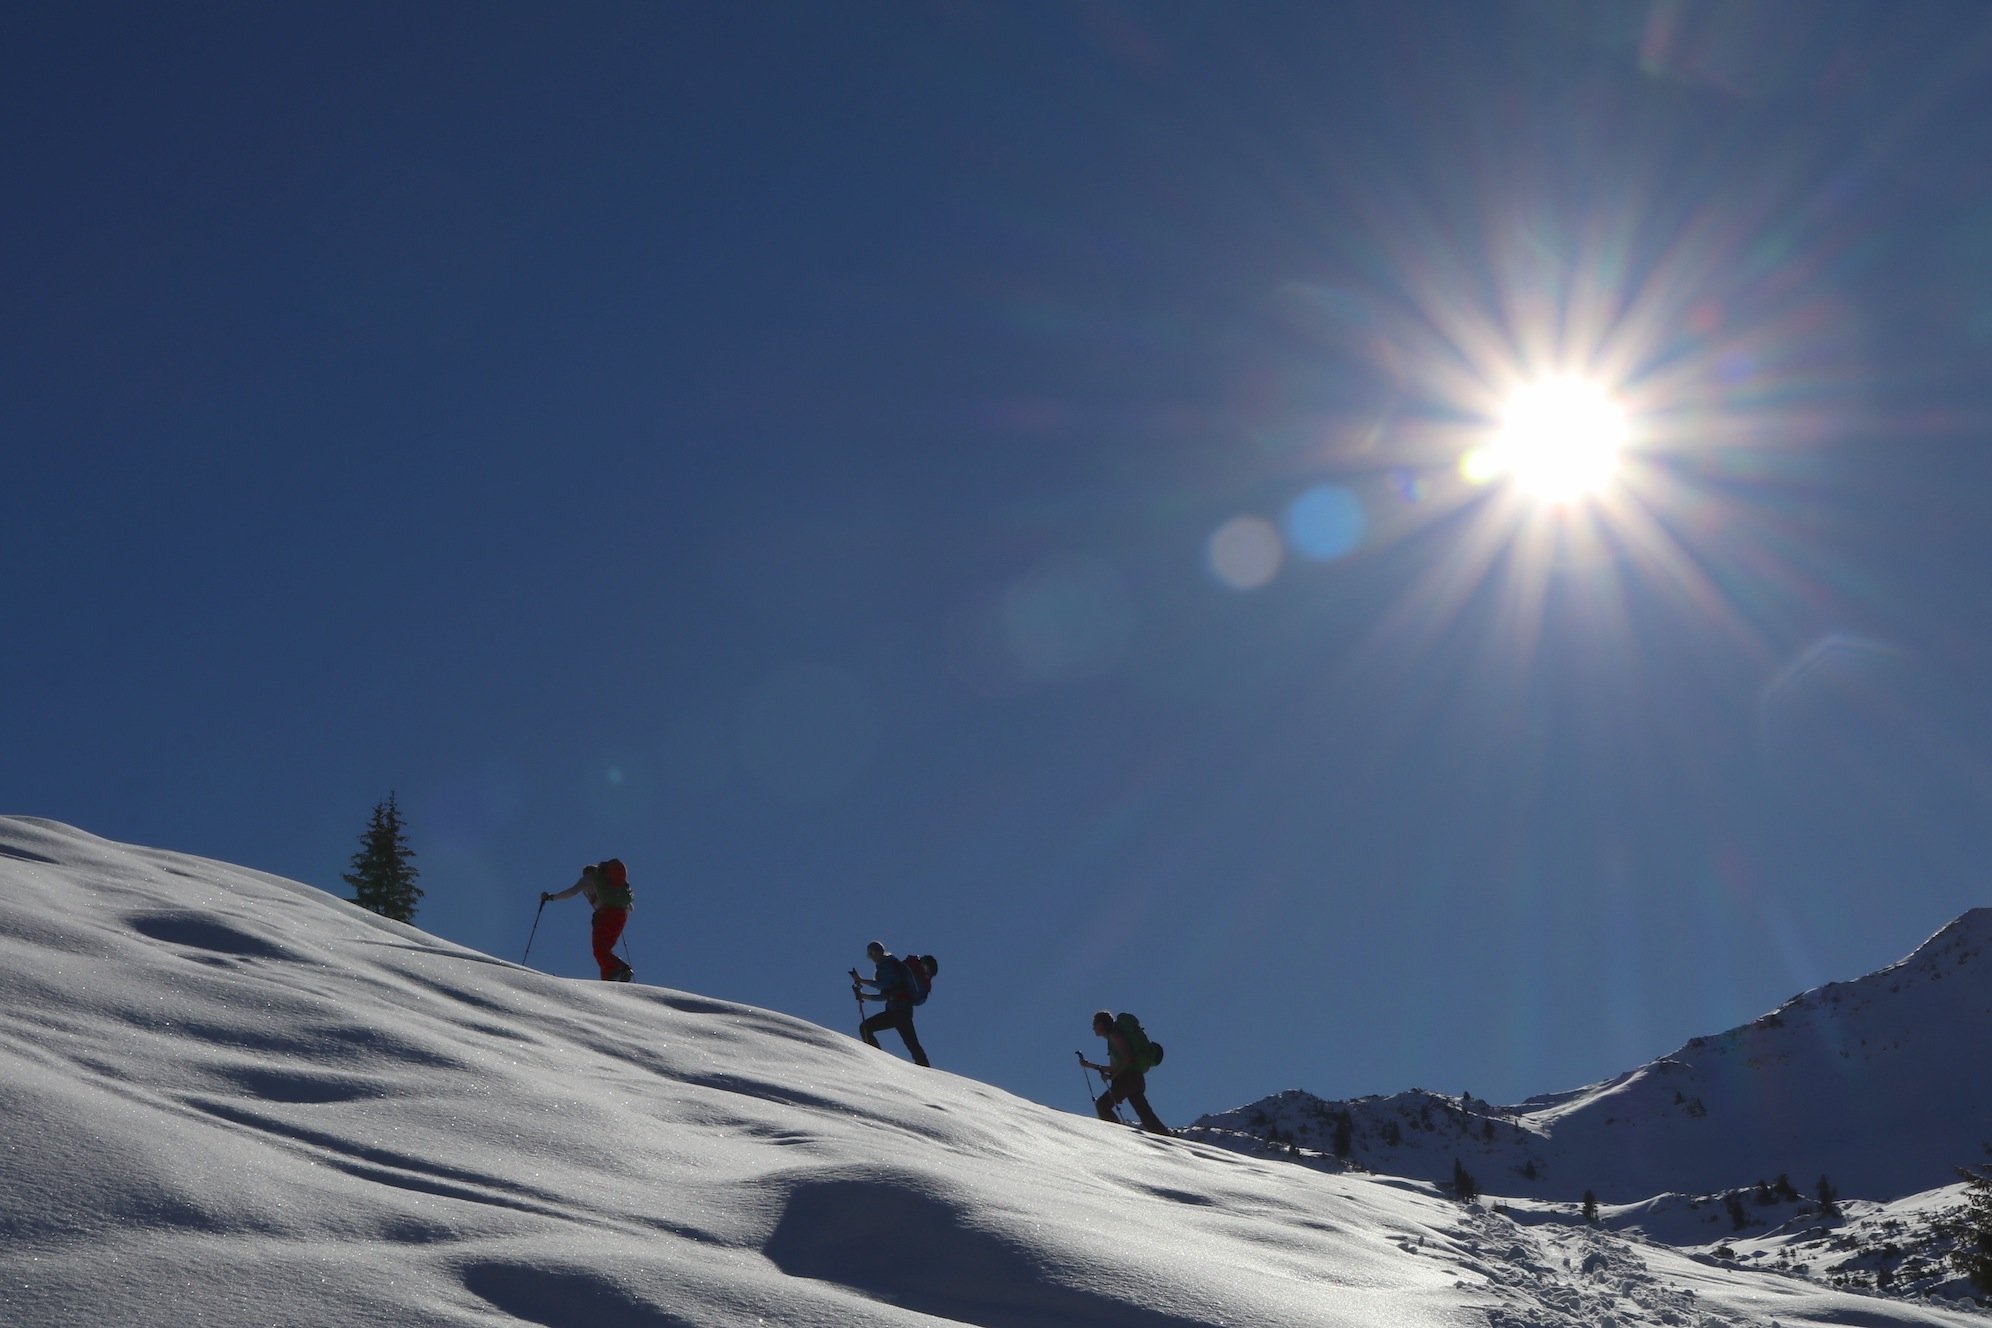 Ziele - Steinbergstein (2.215m): Mittelschwere Skitour und/oder Schneeschuhtour in den Kitzbüheler Alpen